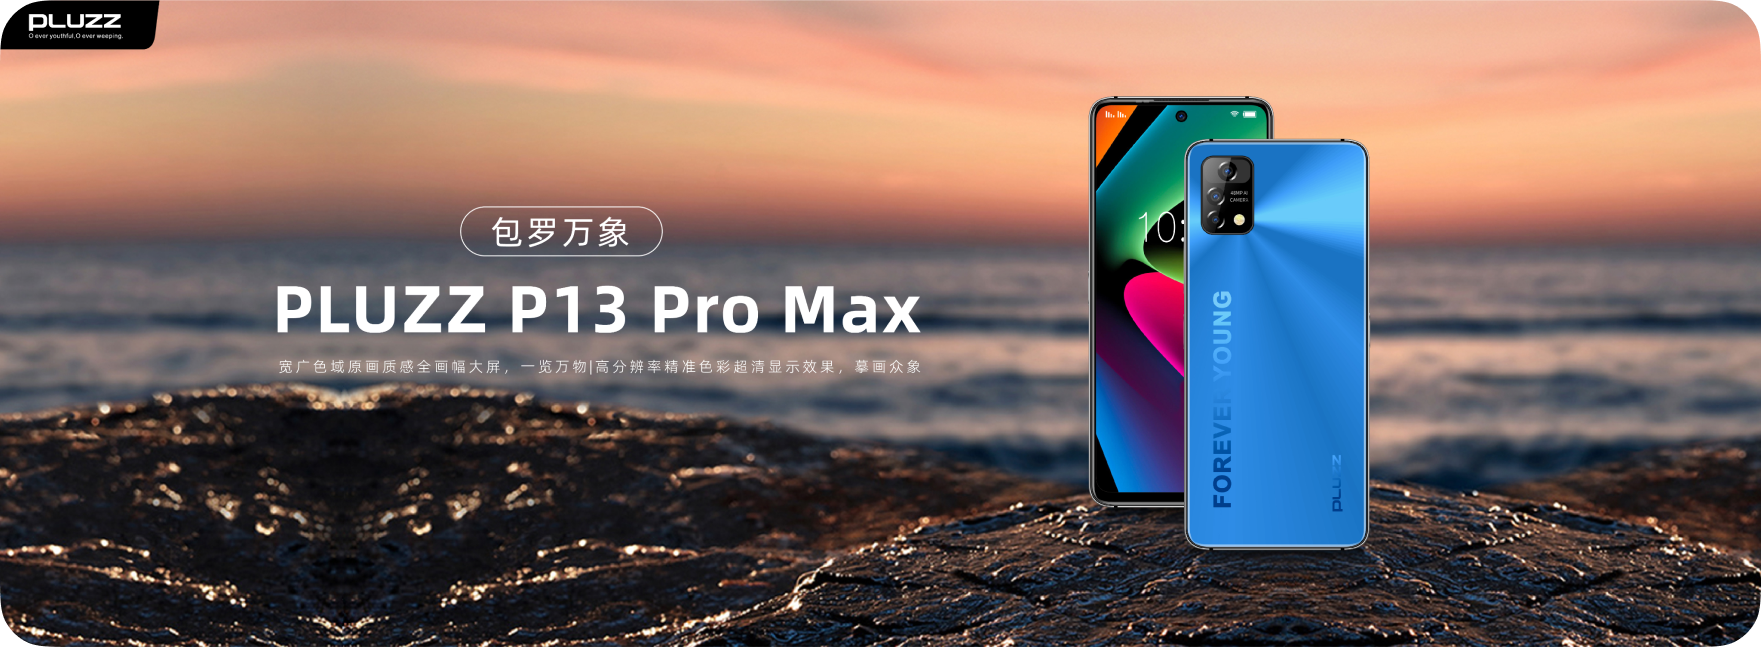 P13 Pro Max